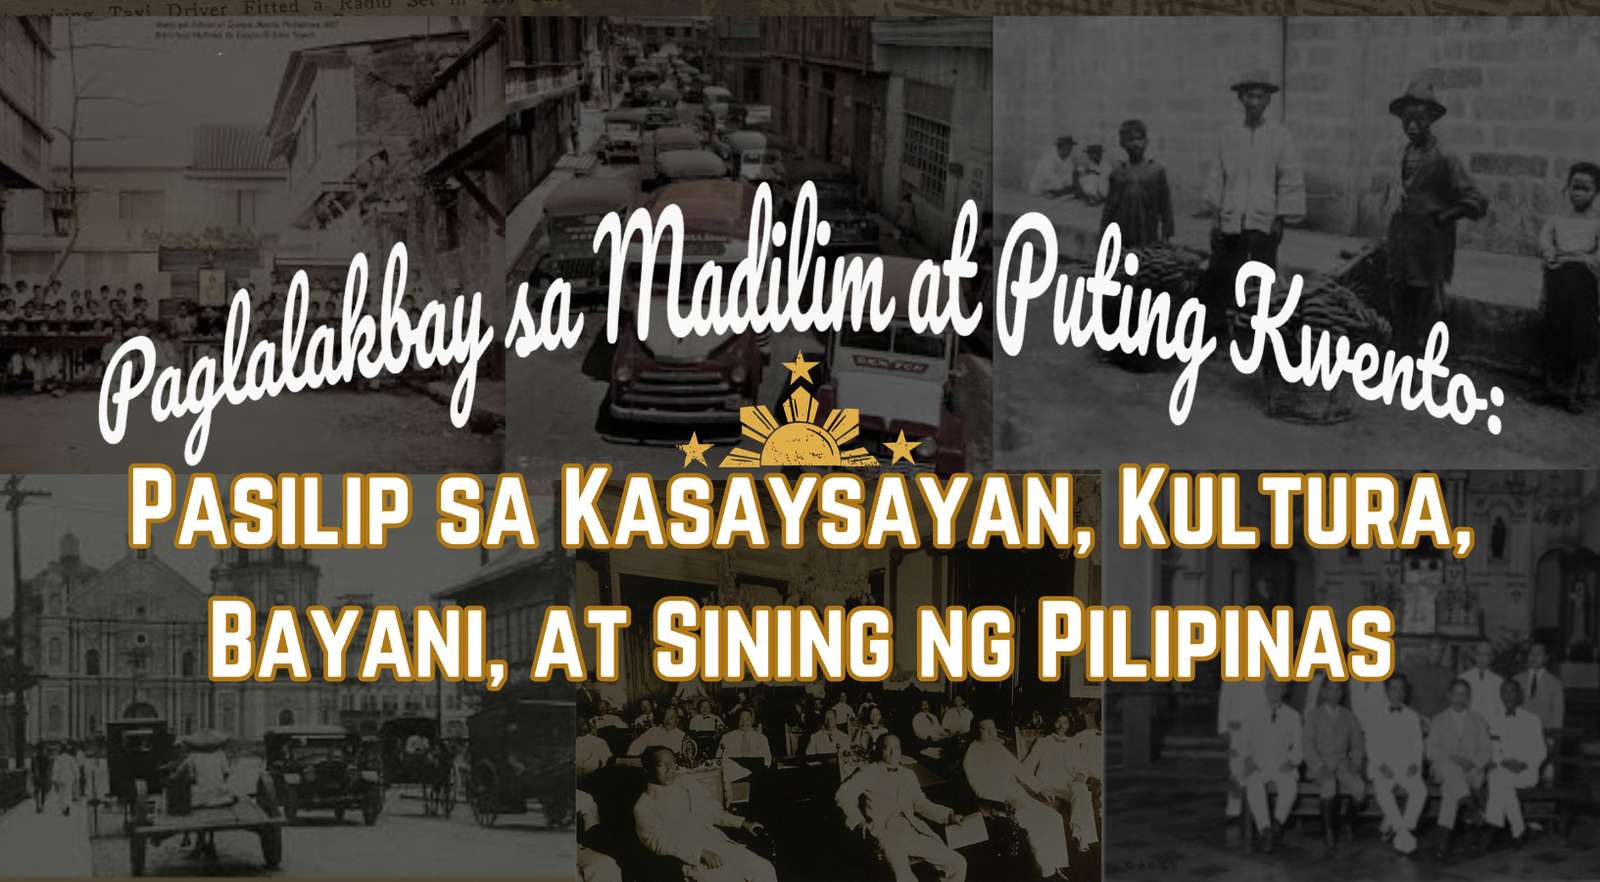 Четене по история на Филипините онлайн пъзел